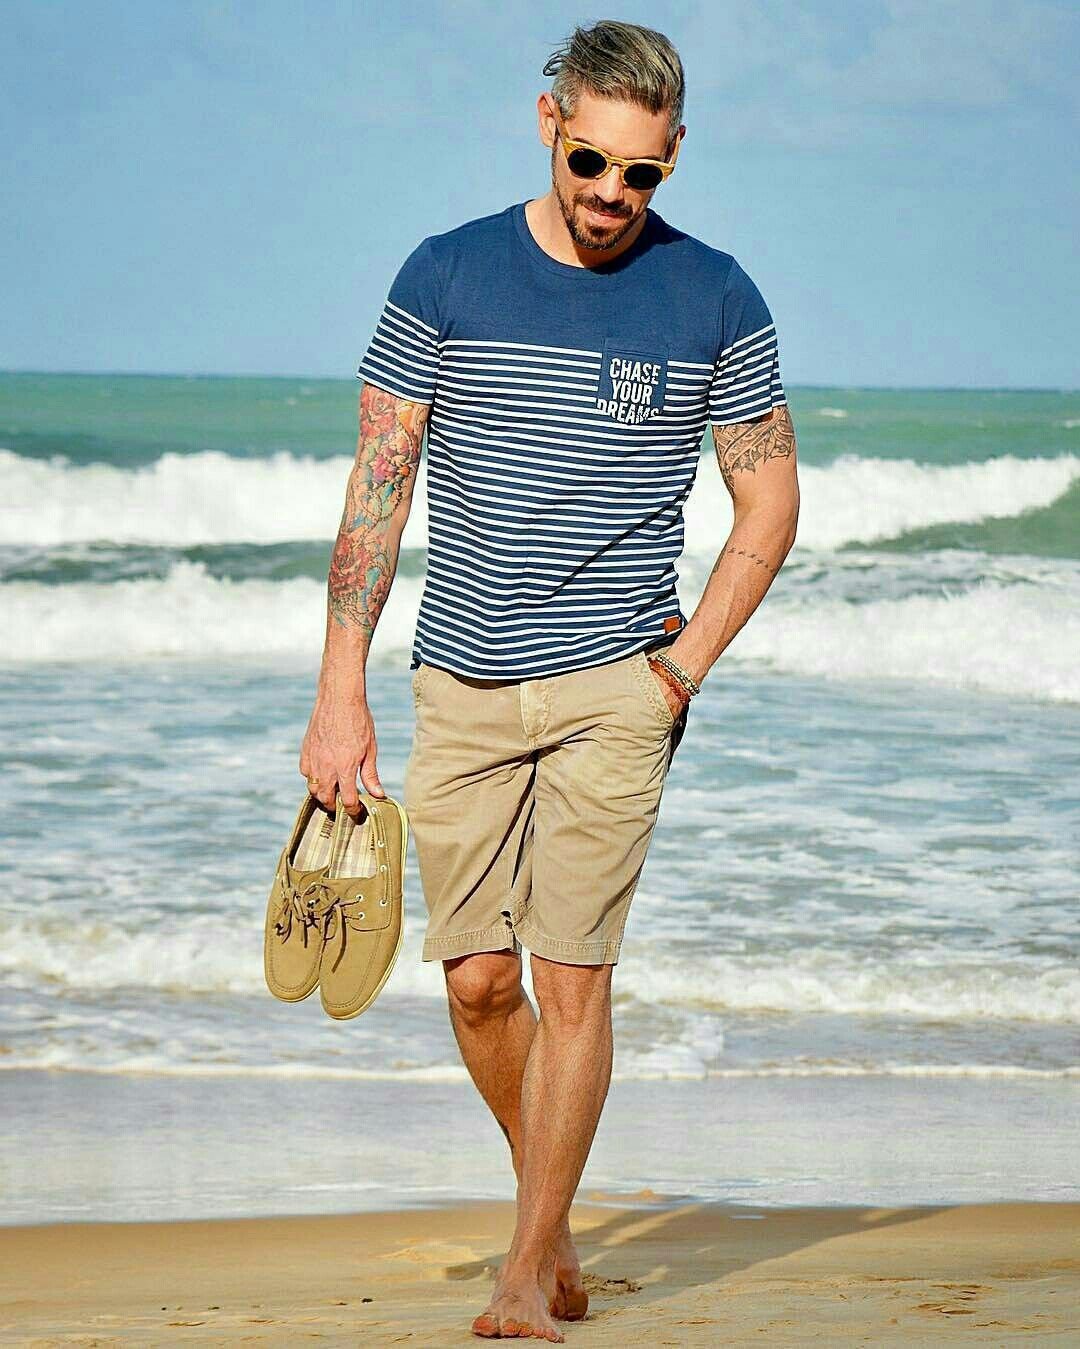 Мужские летние луки. Летний образ для мужчины. Пляжный стиль одежды мужчины. Стильная мужская одежда на лето. Мужская летняя одежда.